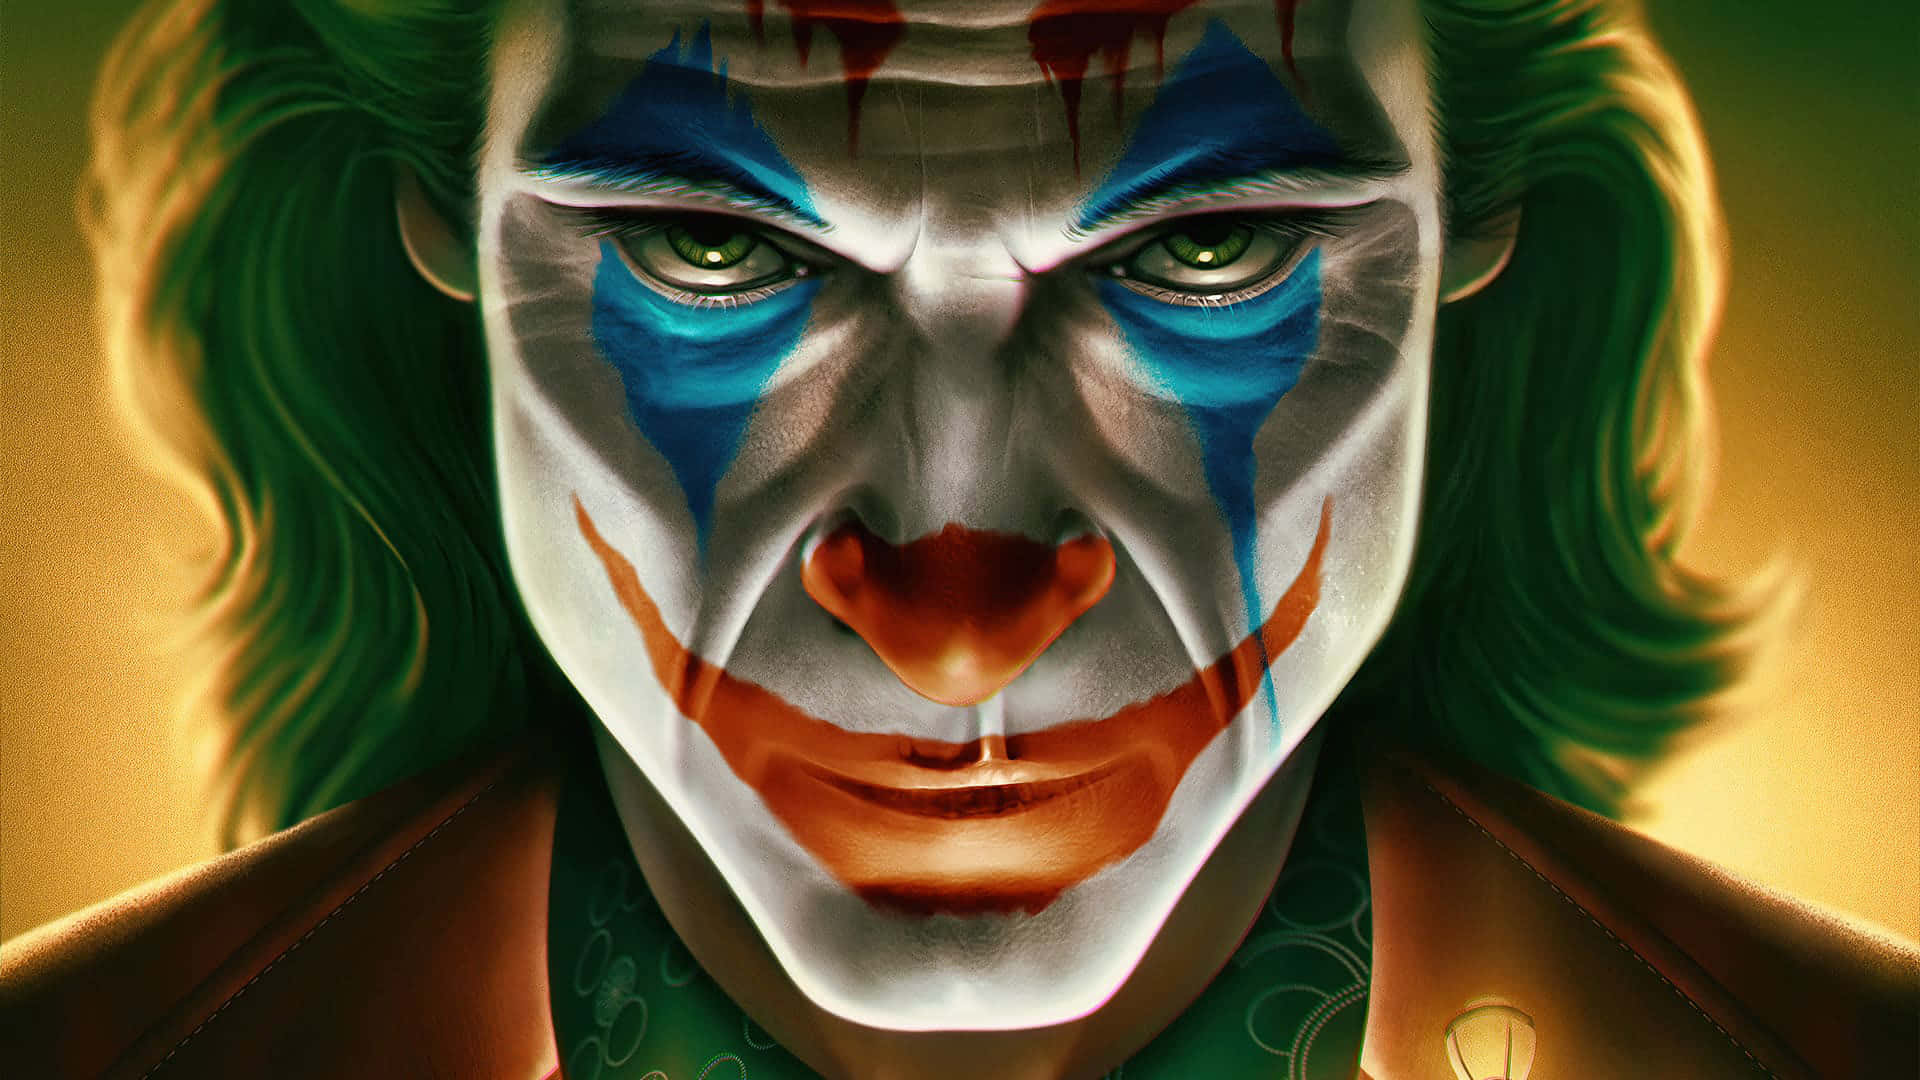 Imagendel Joker Con Máscara Y Mirada Seria